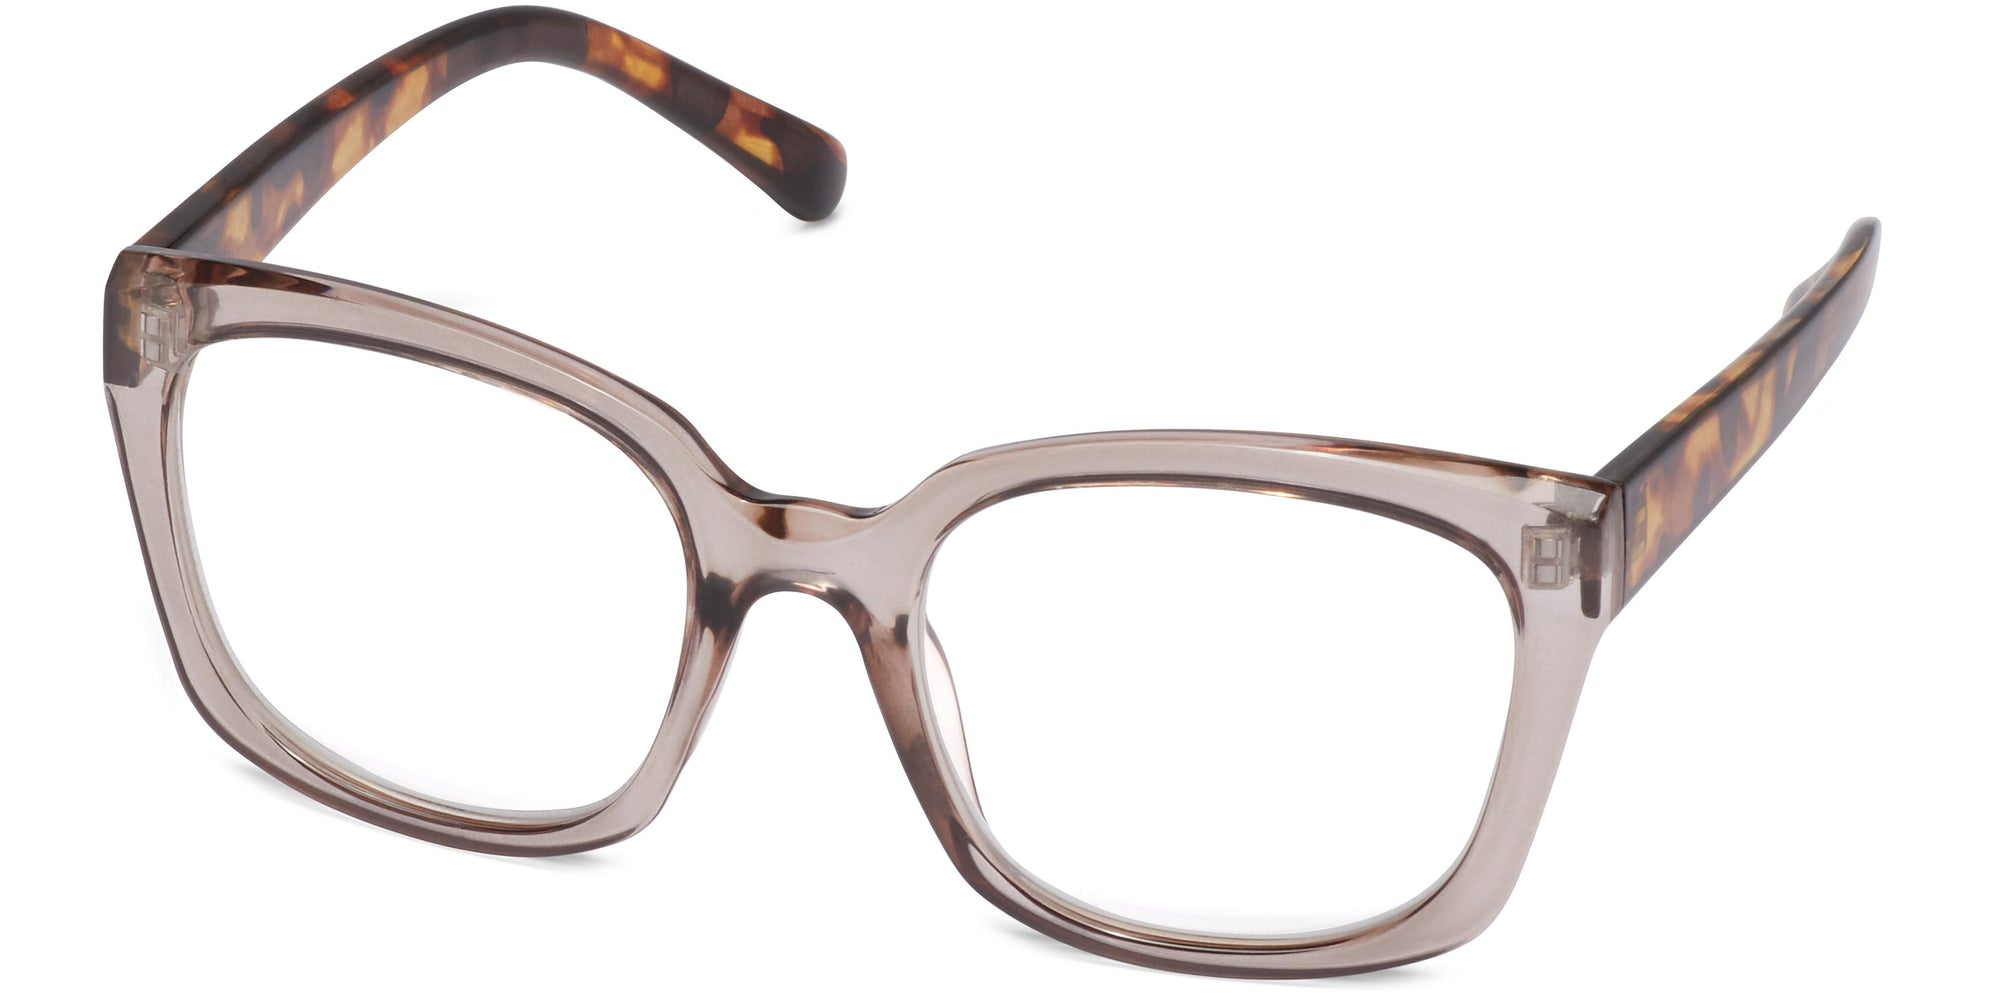 Freya - Brown/Tortoise / 1.25 - Reading Glasses